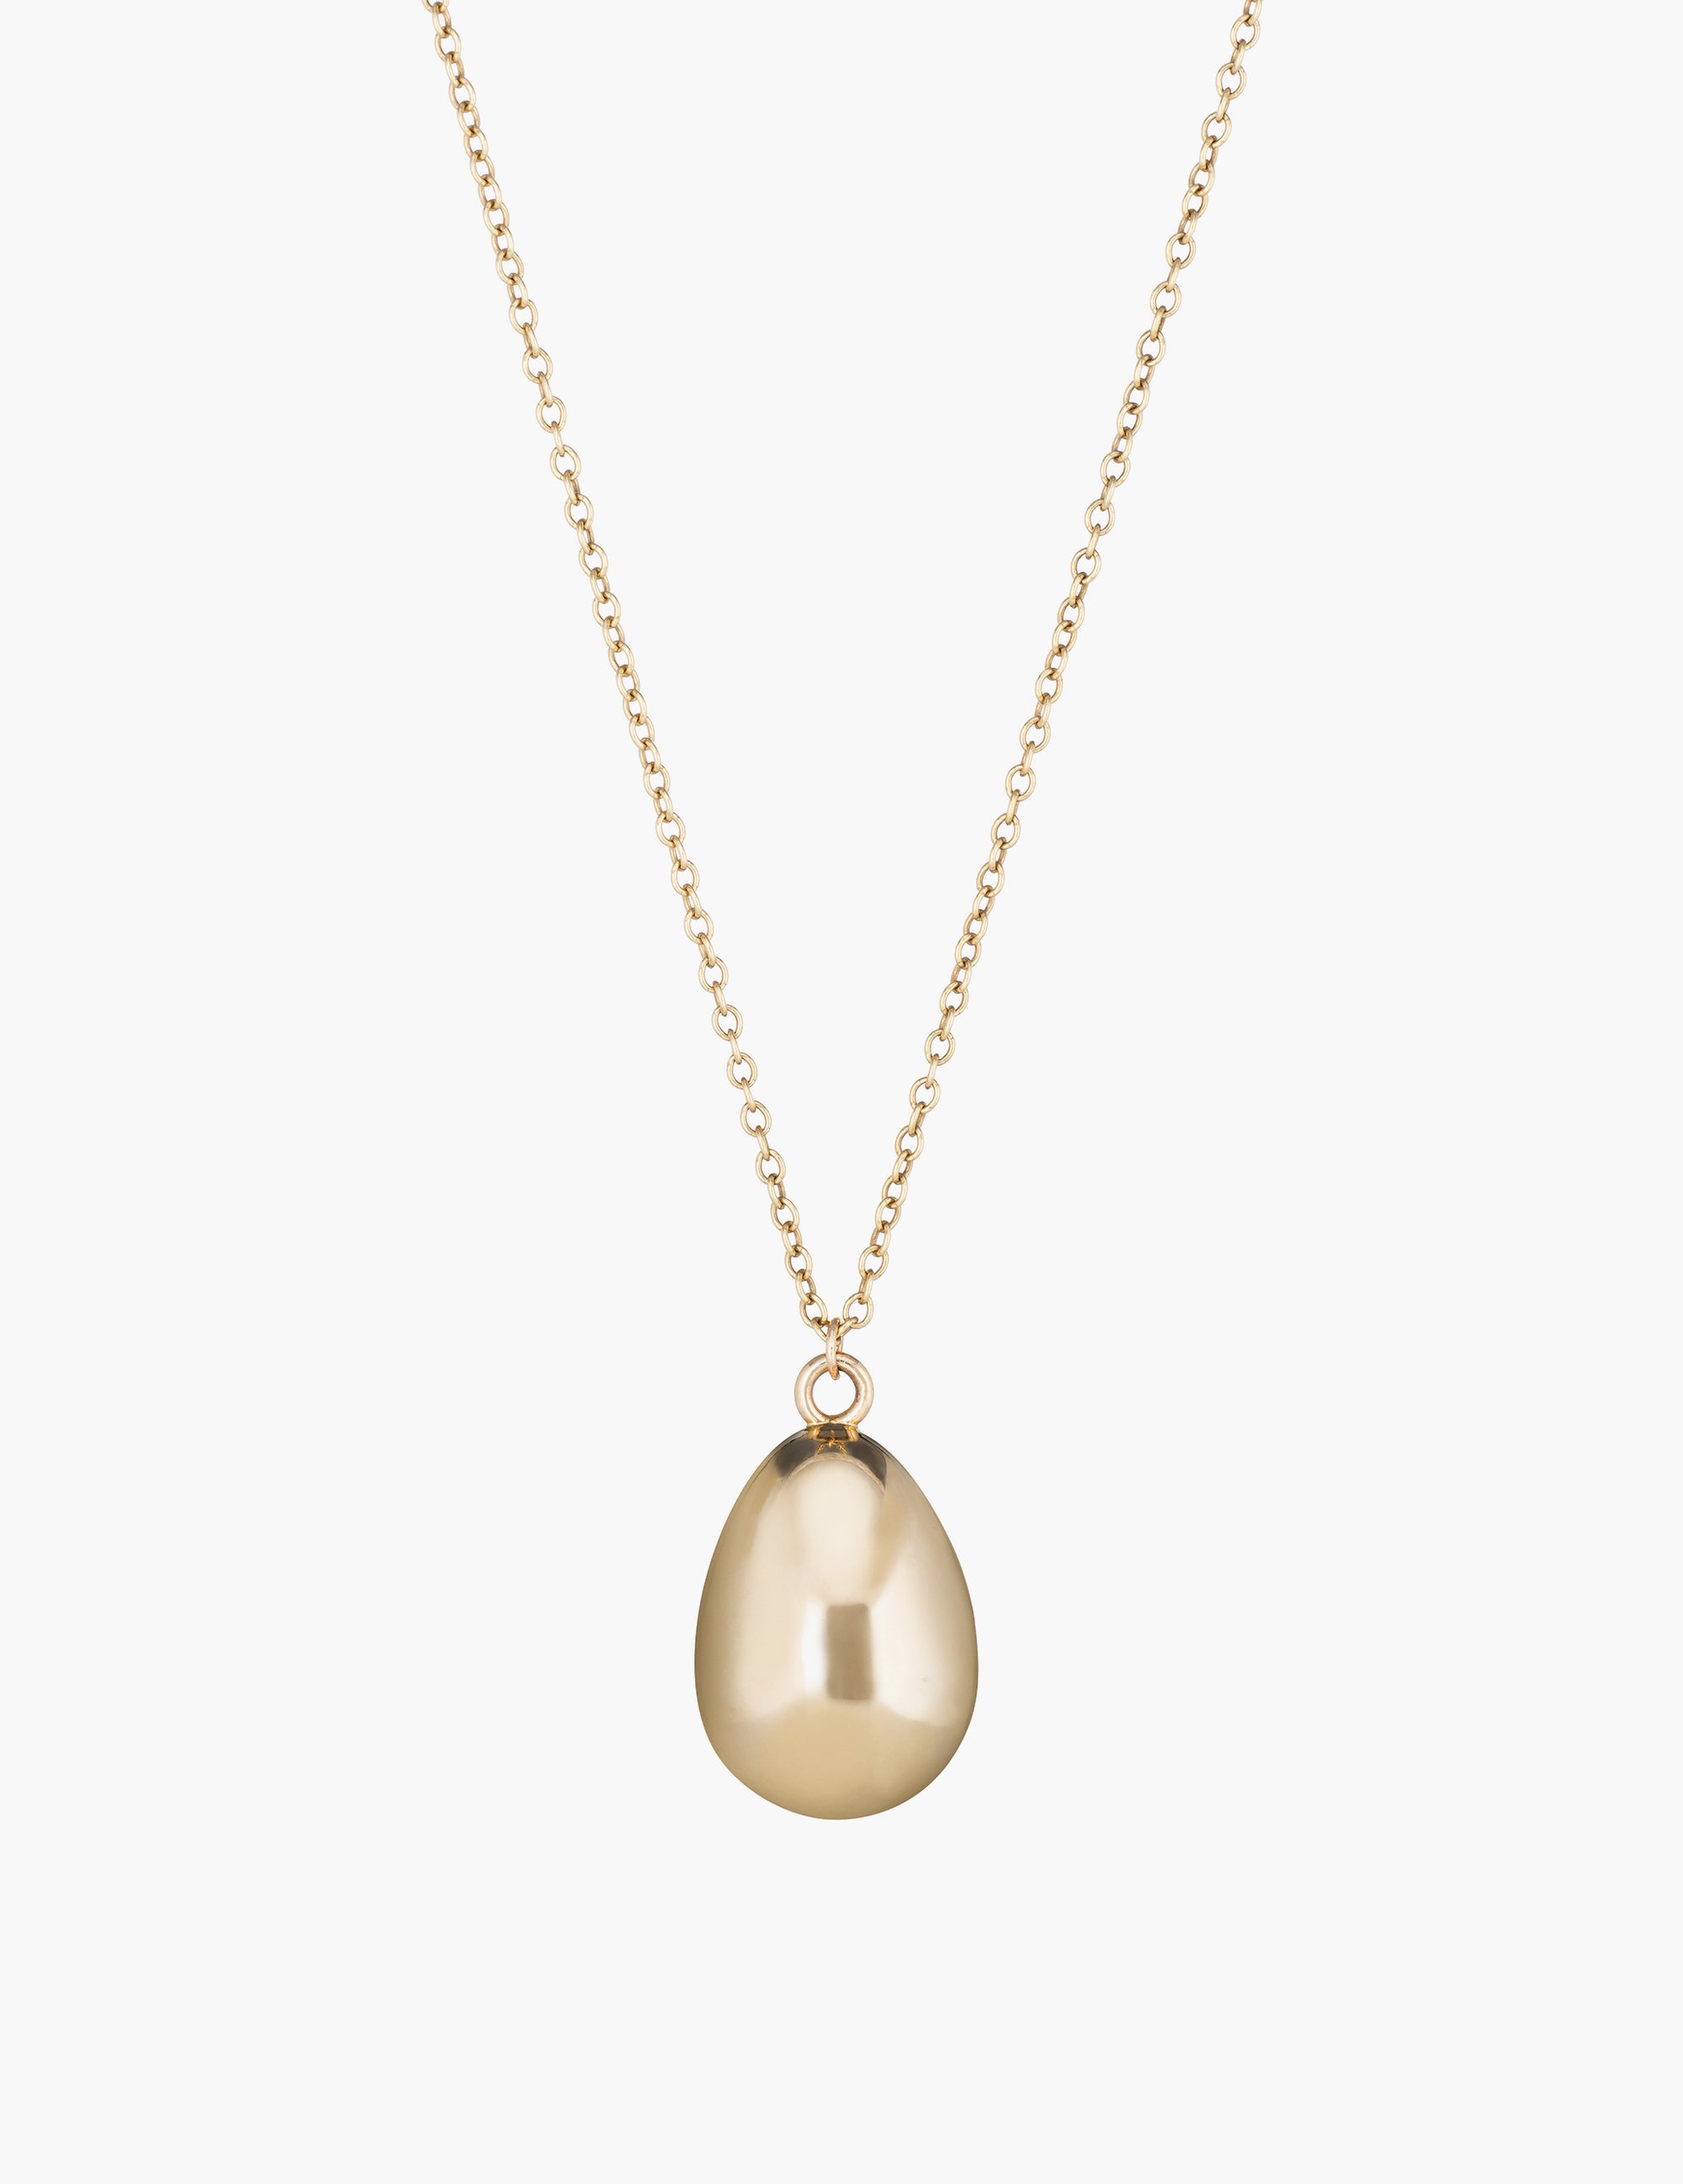 14K gold egg pendant